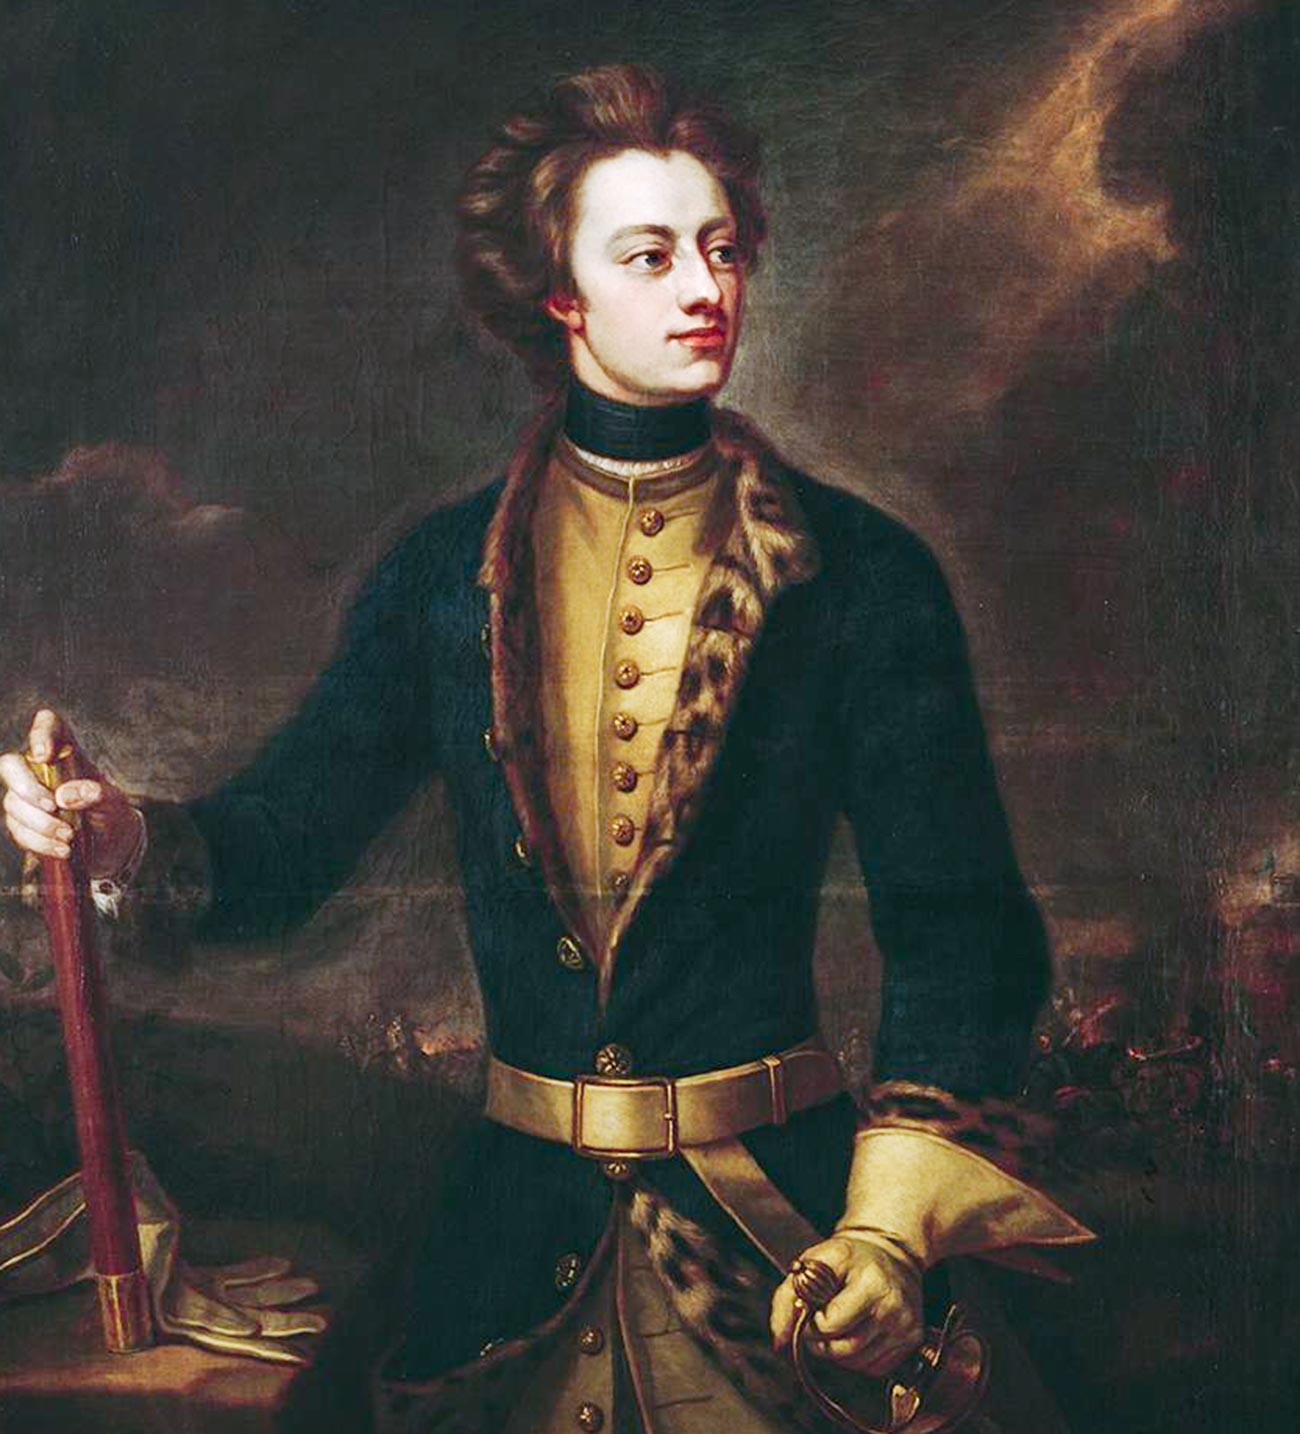 Carlos XII.

